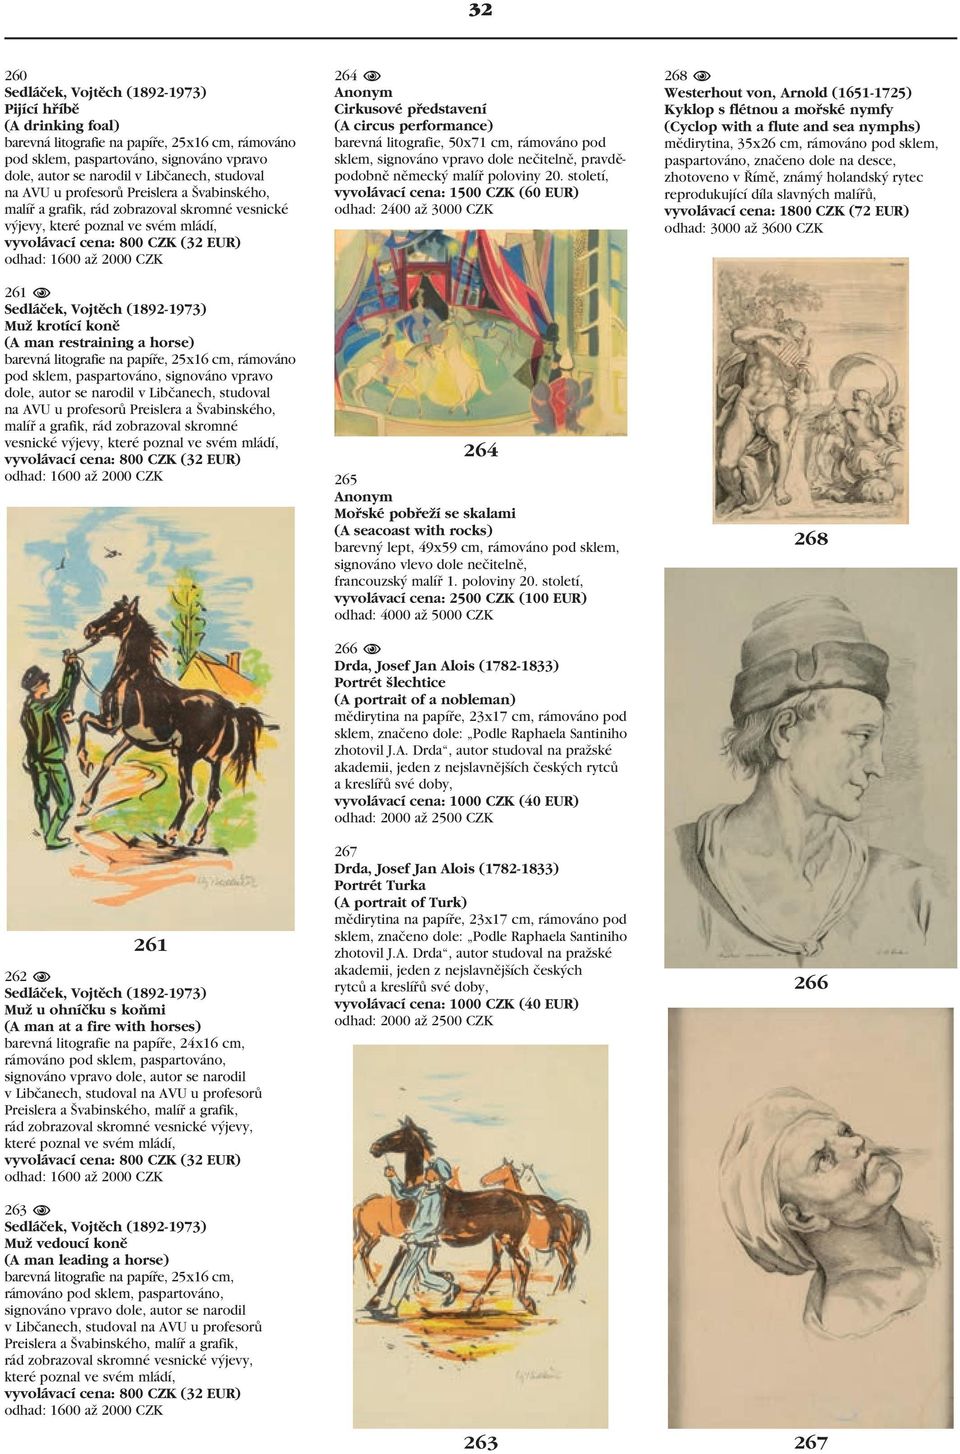 N Sedláček, Vojtěch (1892-1973) Muž krotící koně (A man restraining a horse) barevná litografie na papíře, 25x16 cm, rámováno pod sklem, paspartováno, signováno vpravo dole, autor se narodil v